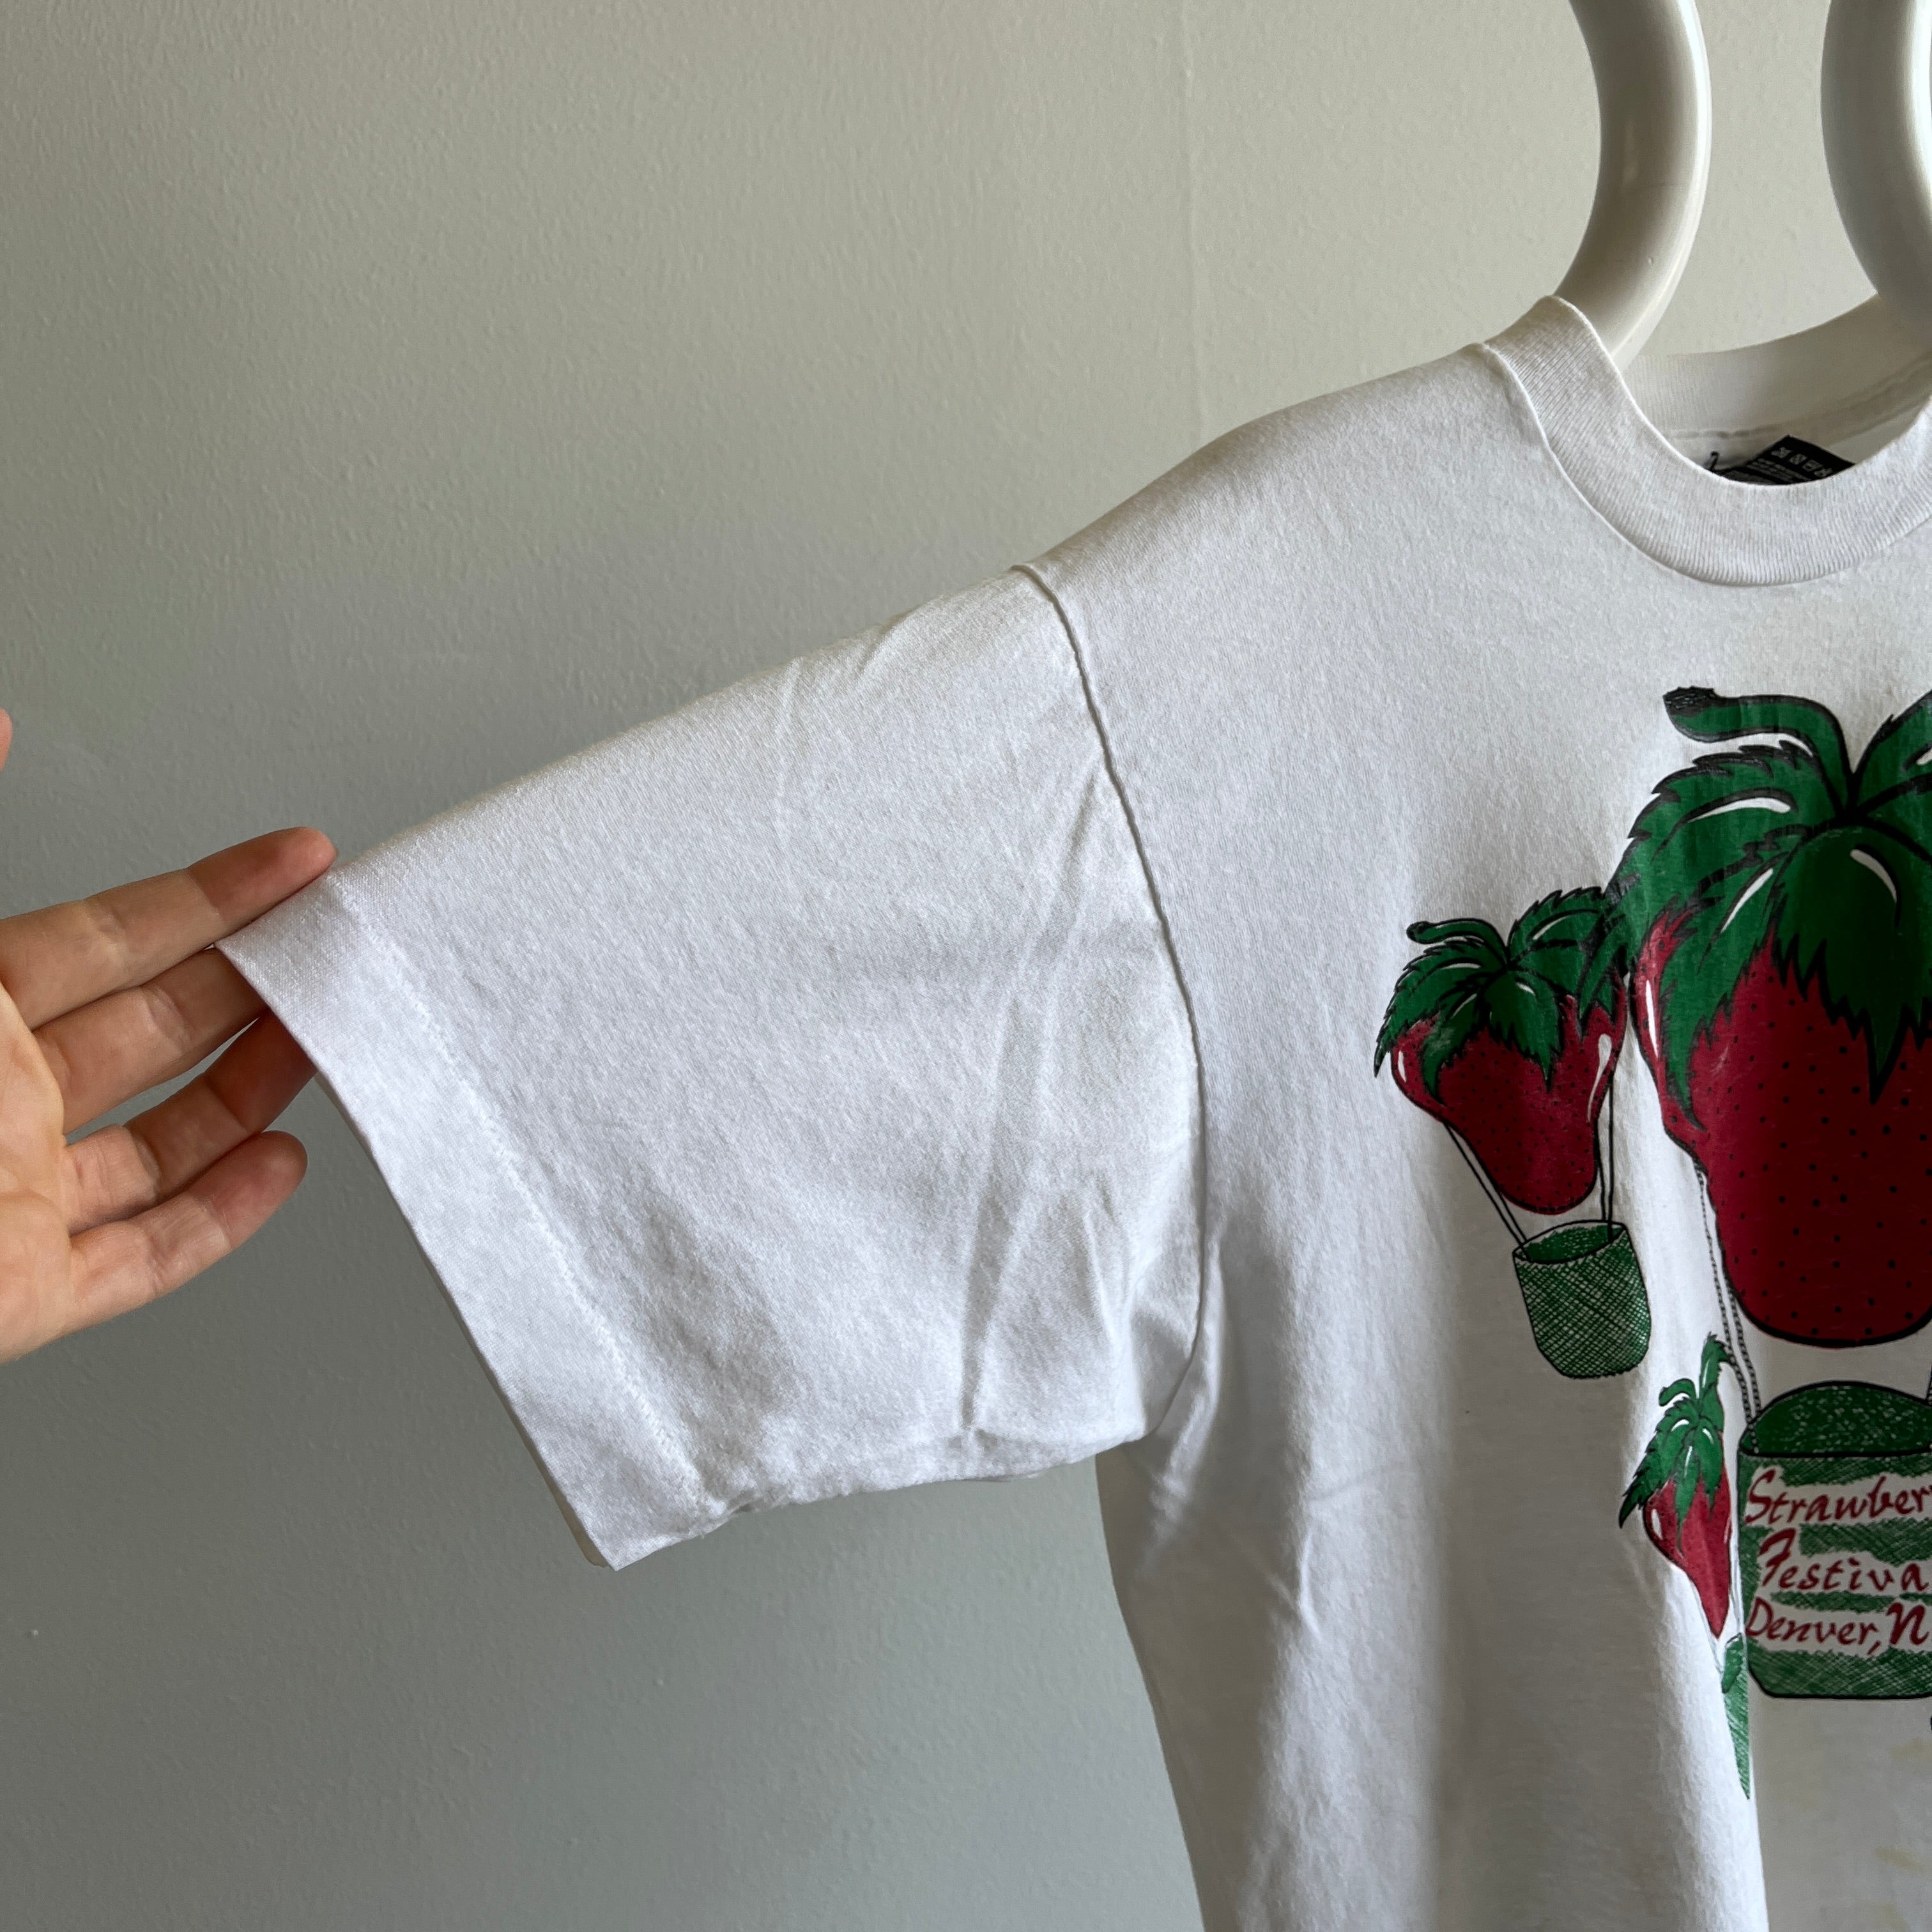 1980s Strawberry Festival - T-shirt taché de Douvres, Caroline du Nord